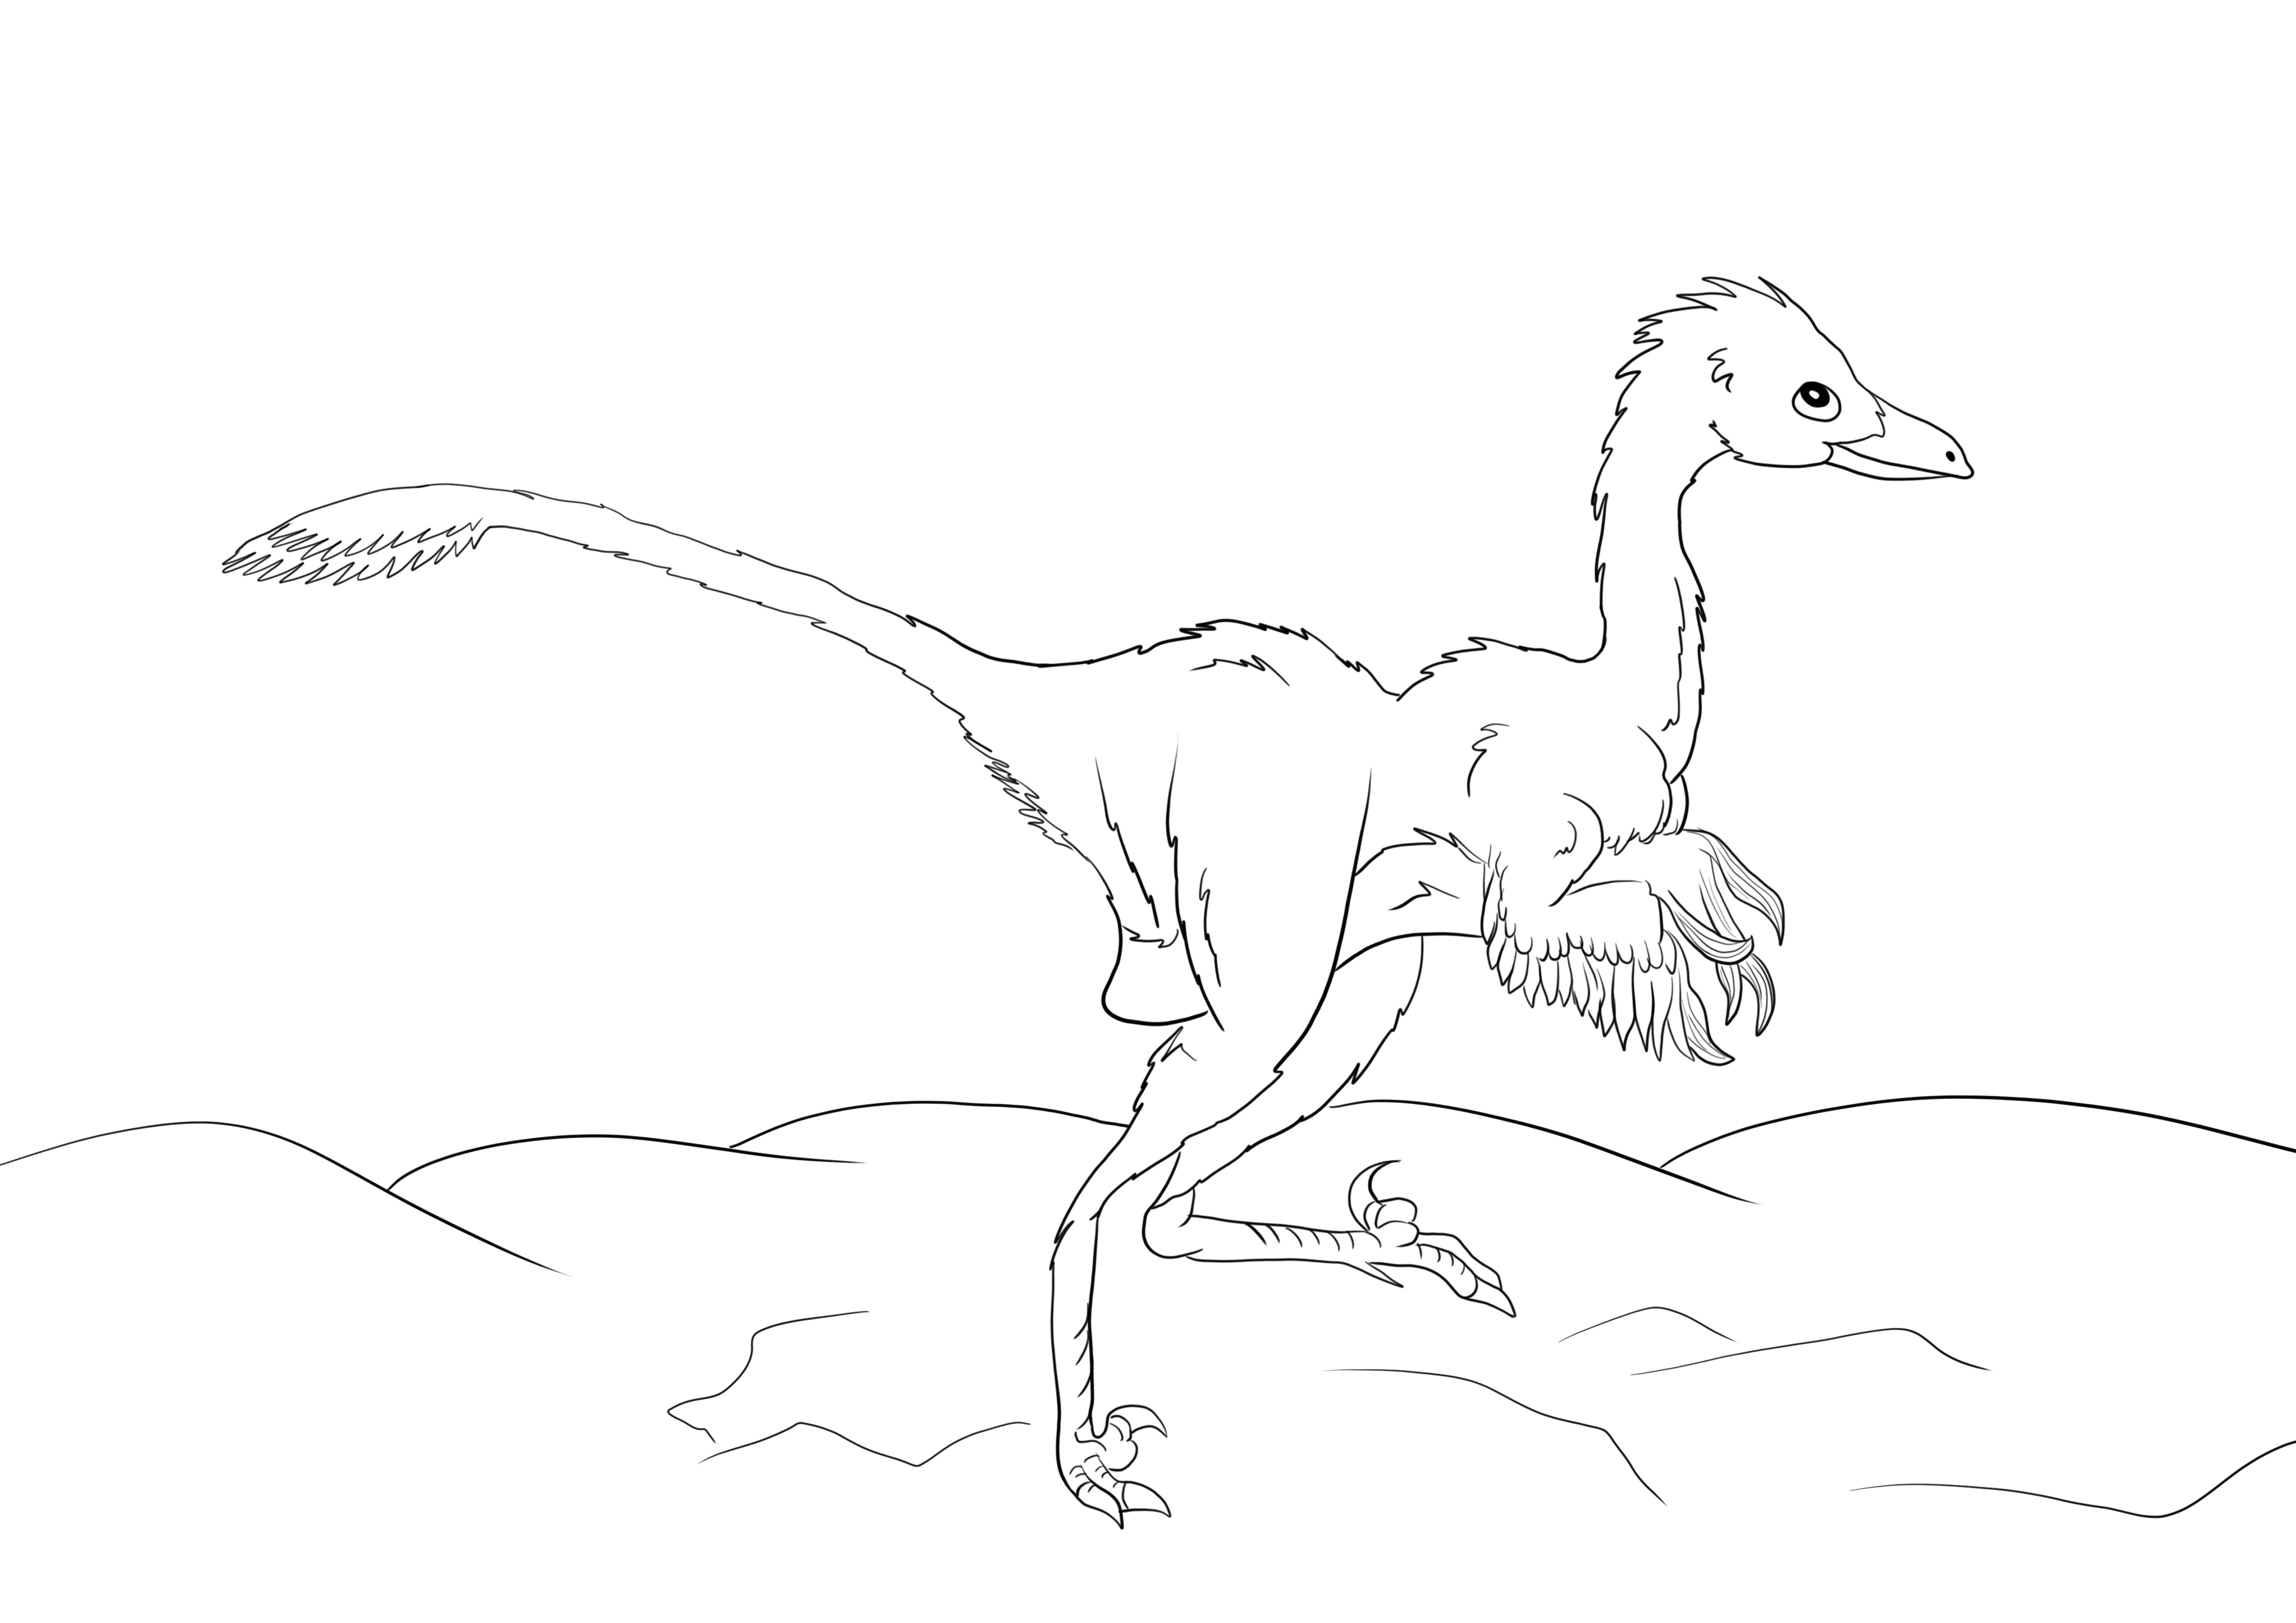 Halaman mewarnai gratis dinosaurus troodon untuk dicetak secara gratis